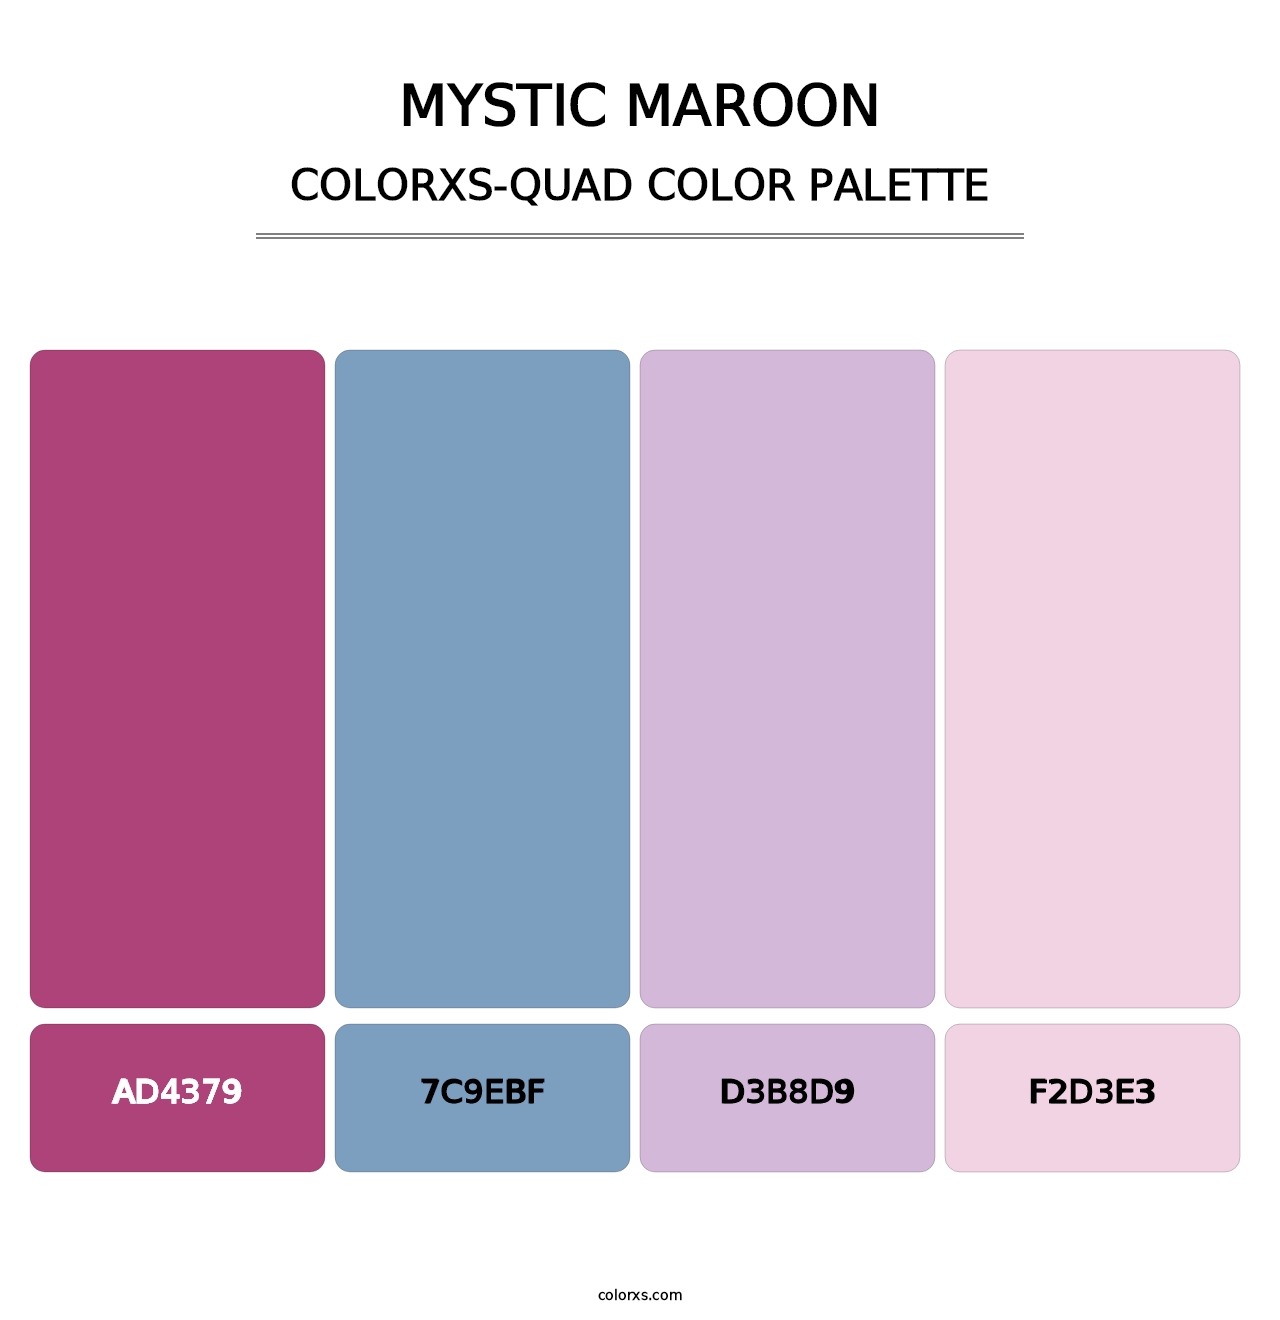 Mystic Maroon - Colorxs Quad Palette